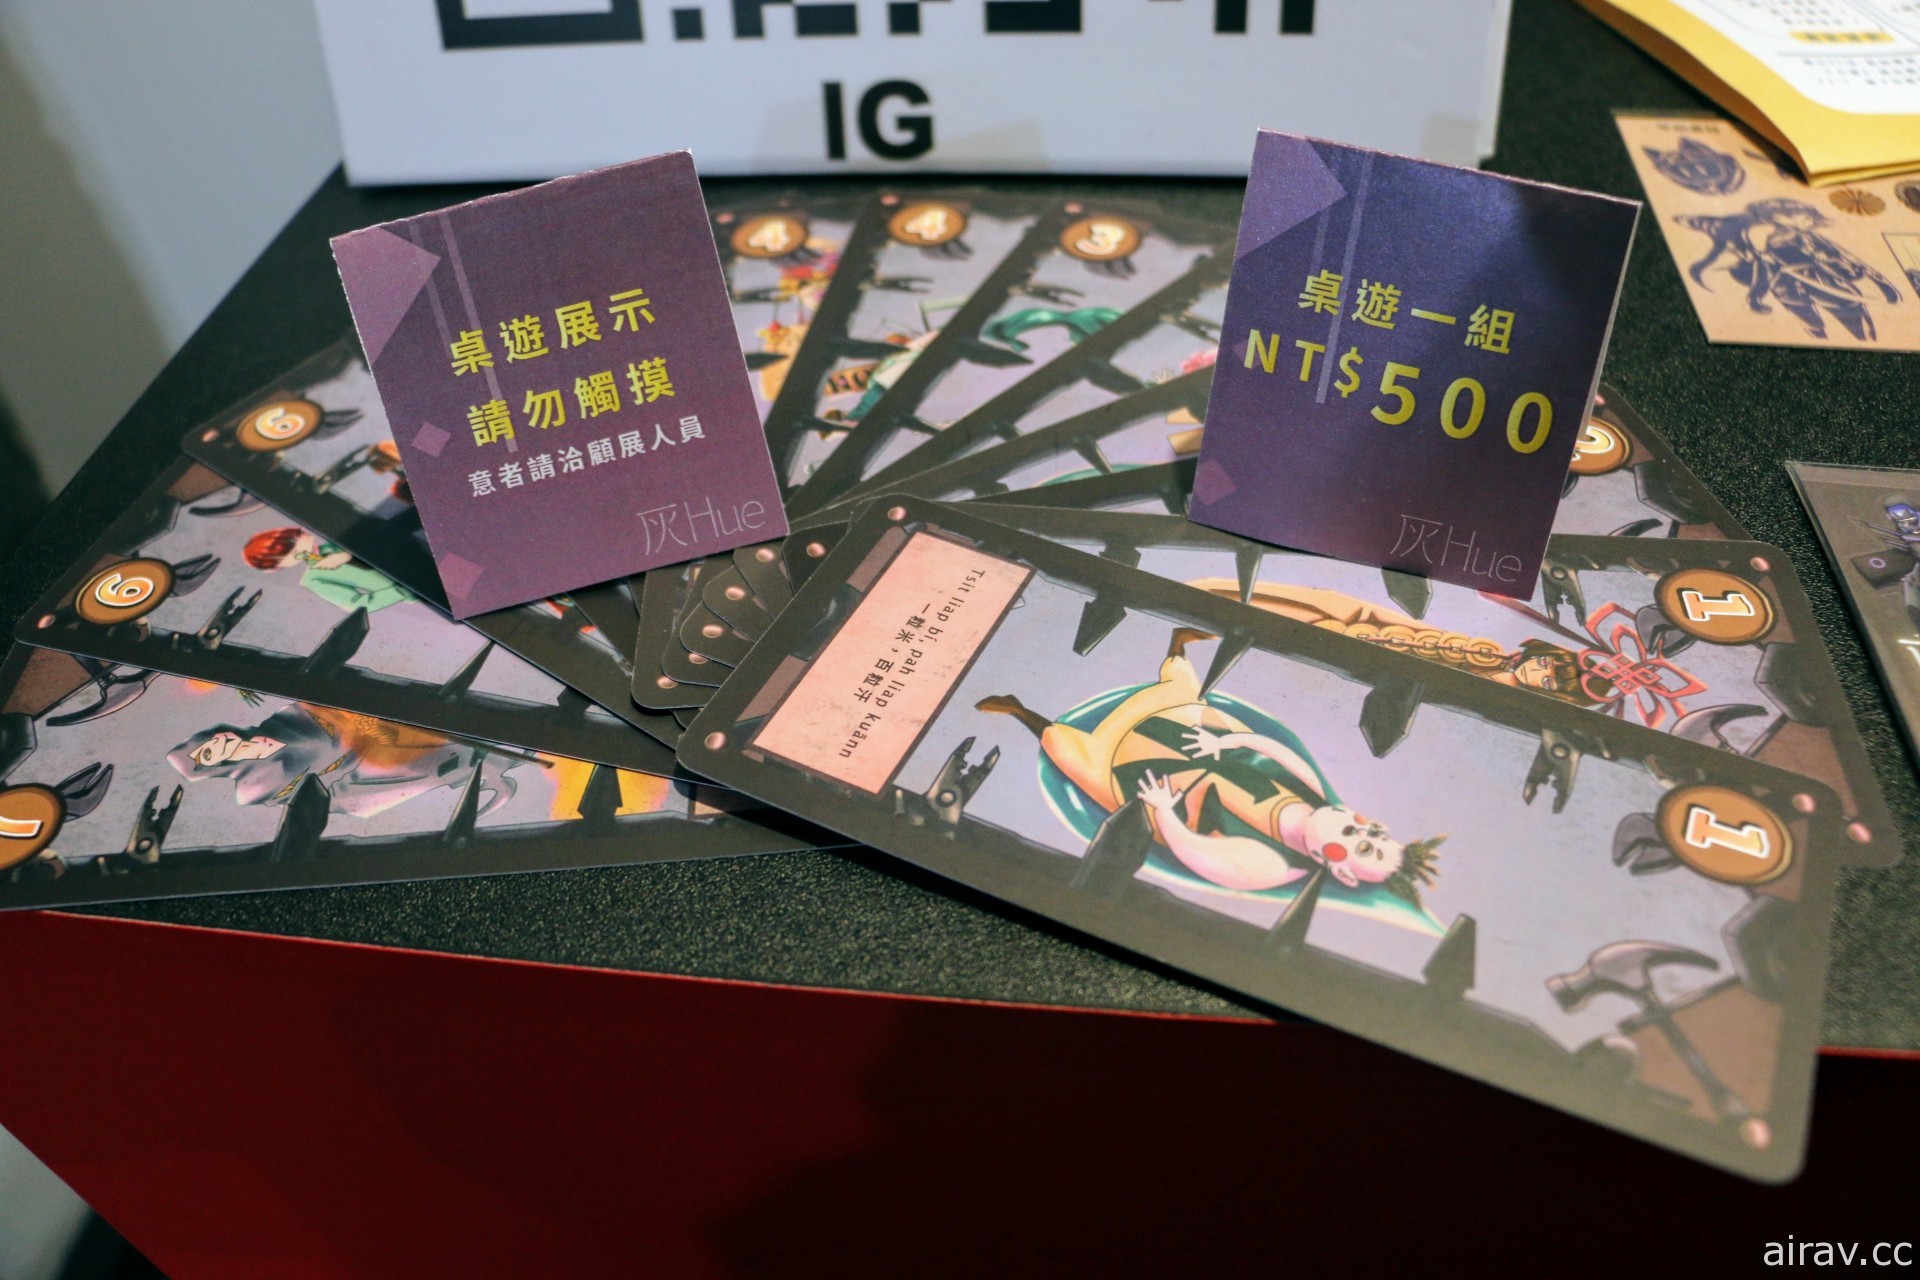 云林科技大学学生作品《灰 HUE》将游戏融入“台语”推广台语文化价值